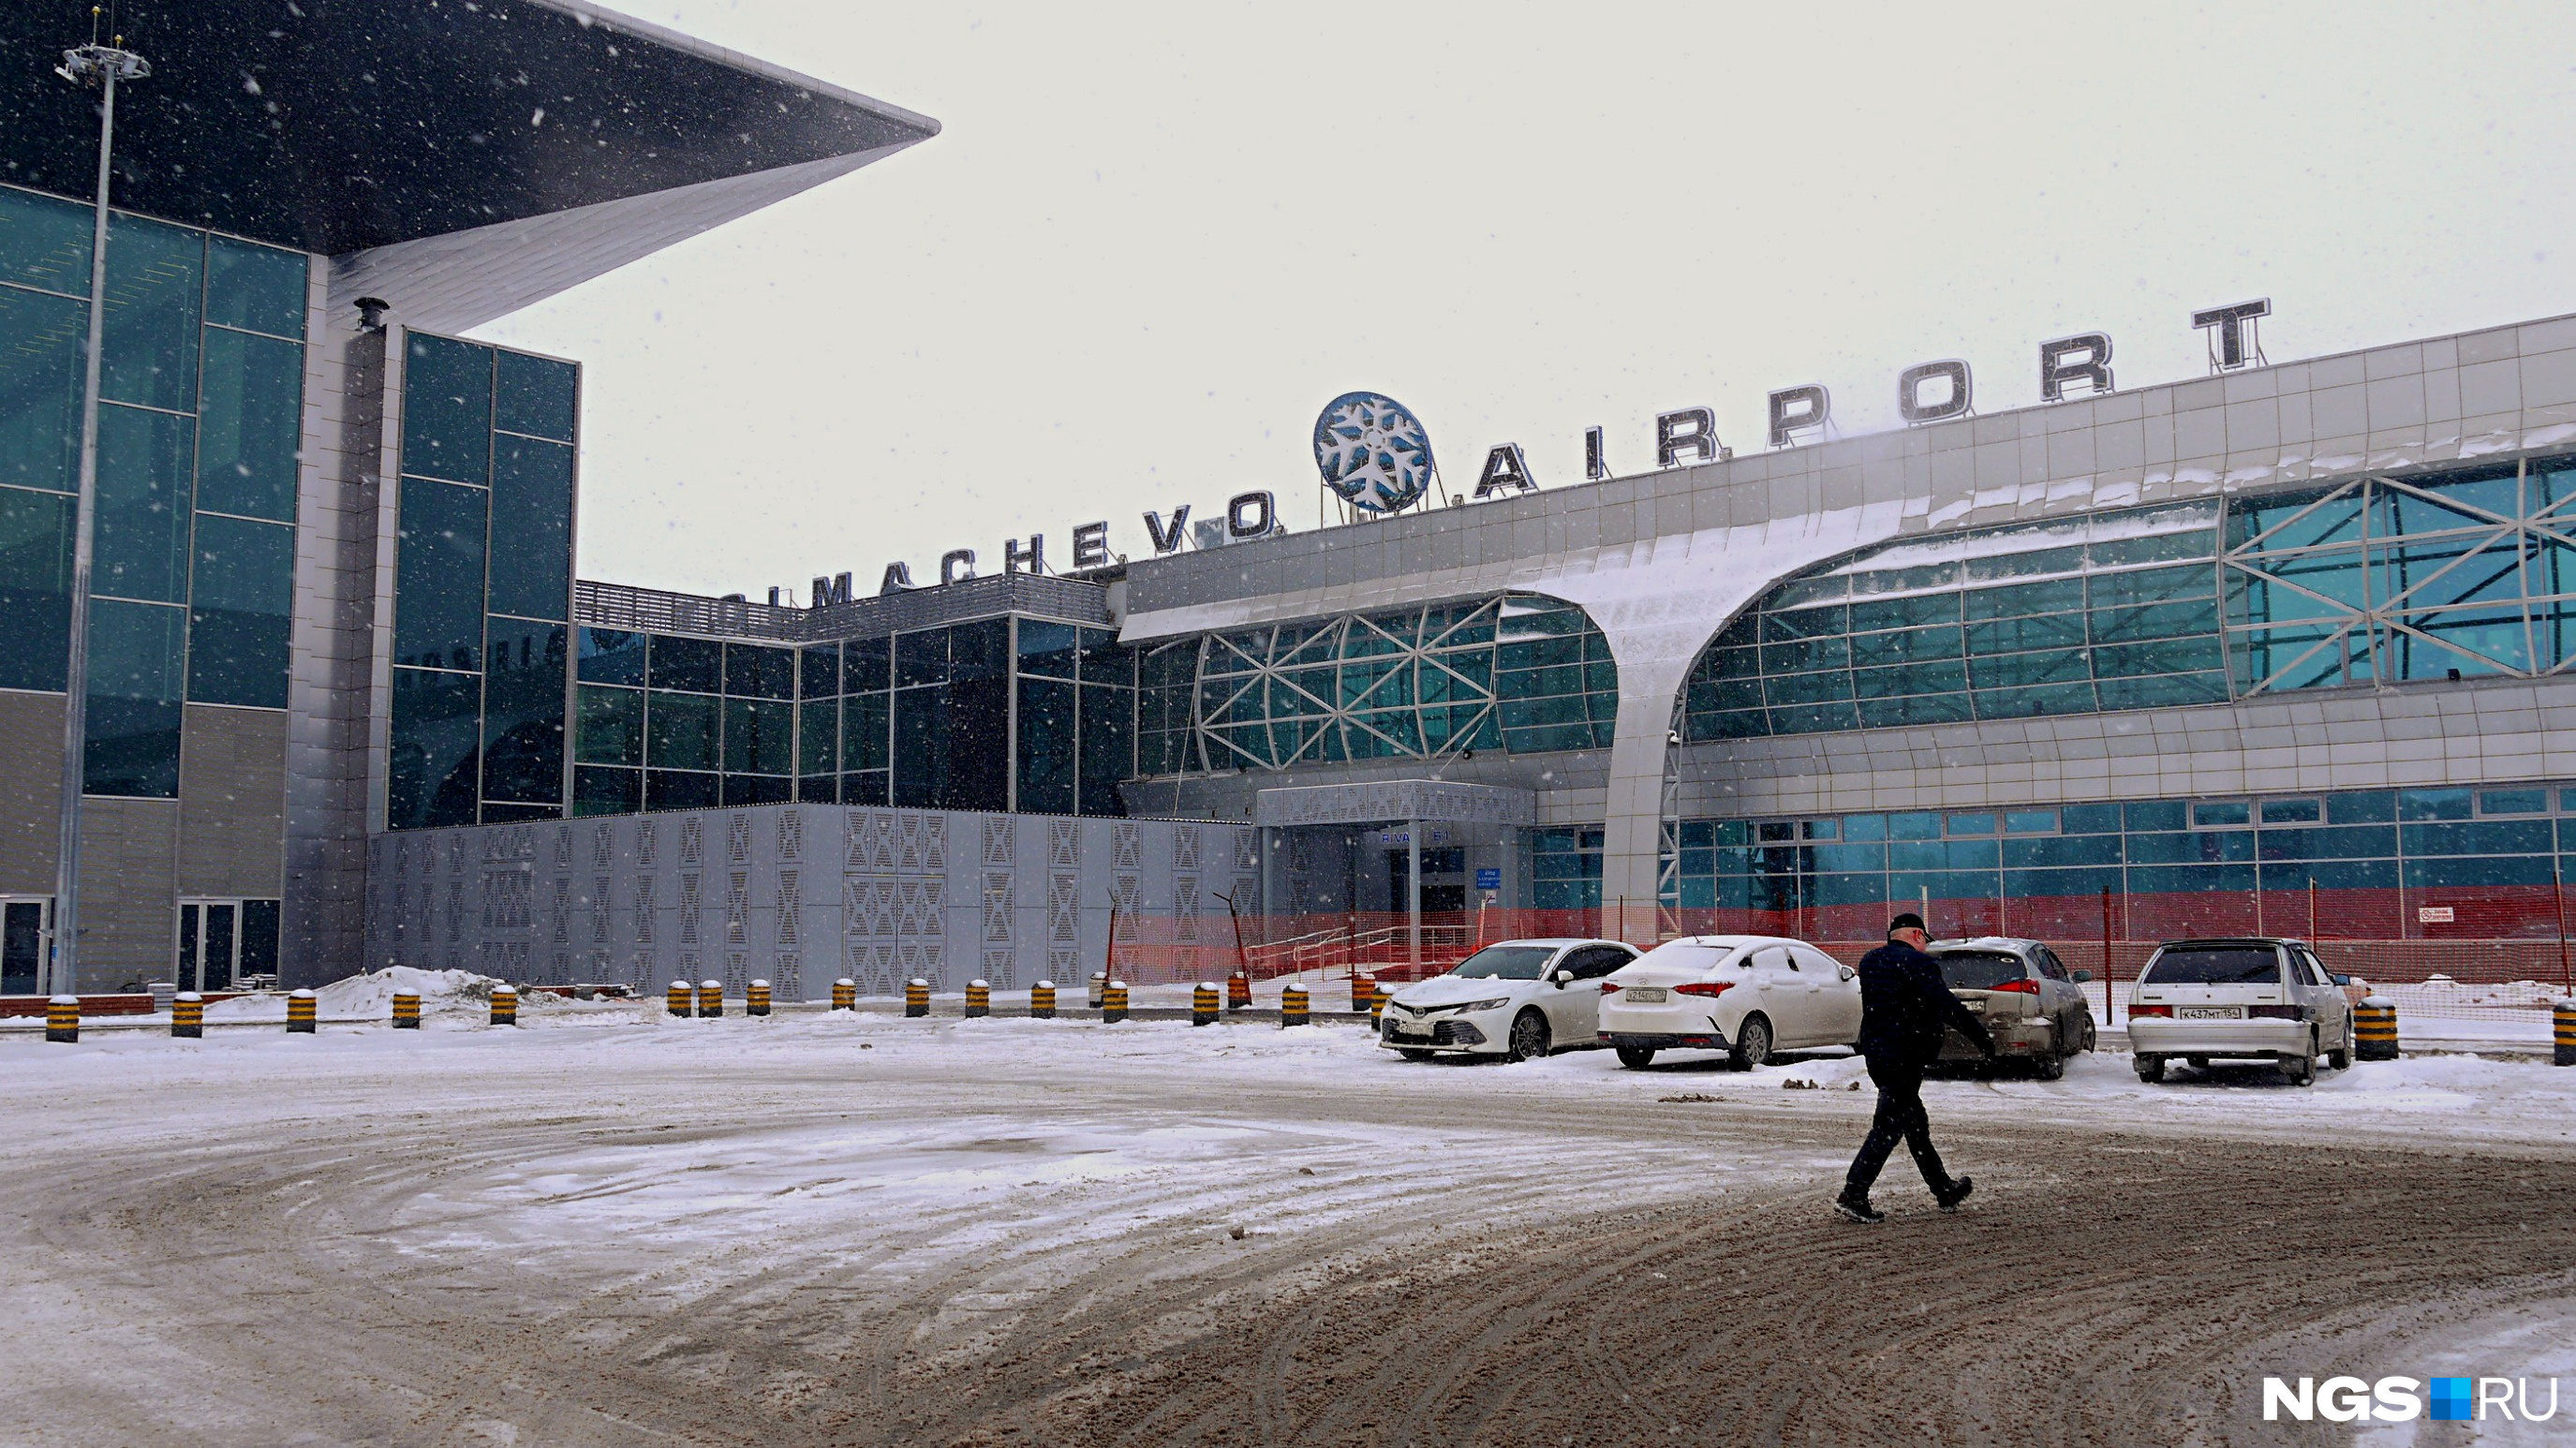 Новосибирск аэропорт центр. Аэропорт Толмачево Новосибирск. Новосибирский аэропорт Толмачево реконструкция. Новый терминал Толмачево Новосибирск. Аэропорт Толмачево Новосибирск внутри.